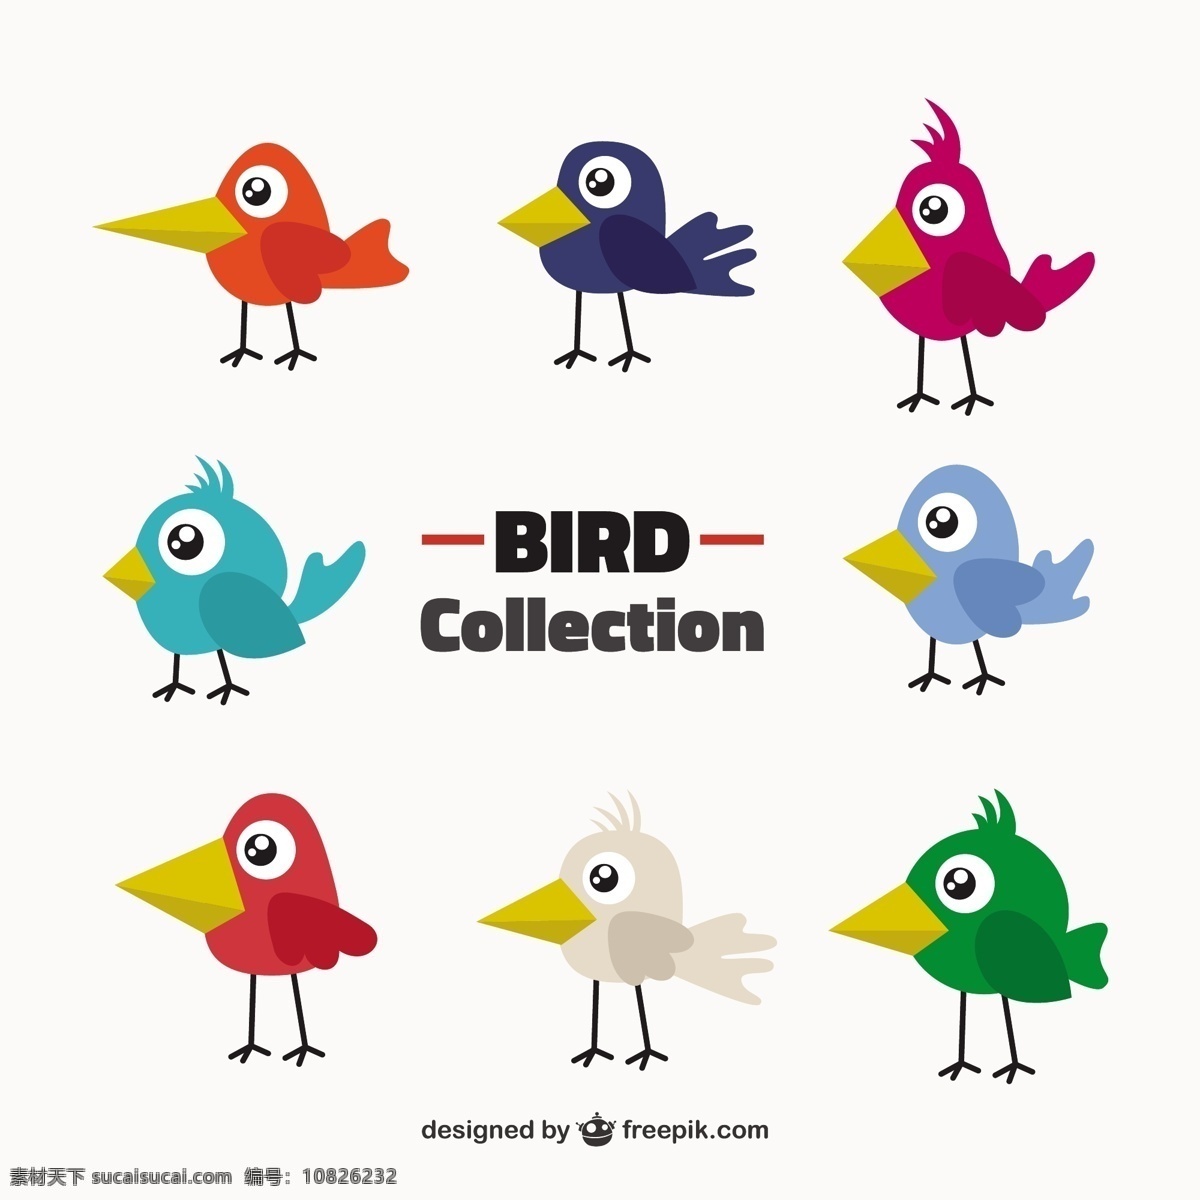 原始 鸟类 收集 颜色 爱 手 鸟 自然 动物 卡通 手工绘制 可爱 翅膀 羽毛 丛林 有趣 动物园 爱鸟 可爱动物 卡通动物 白色